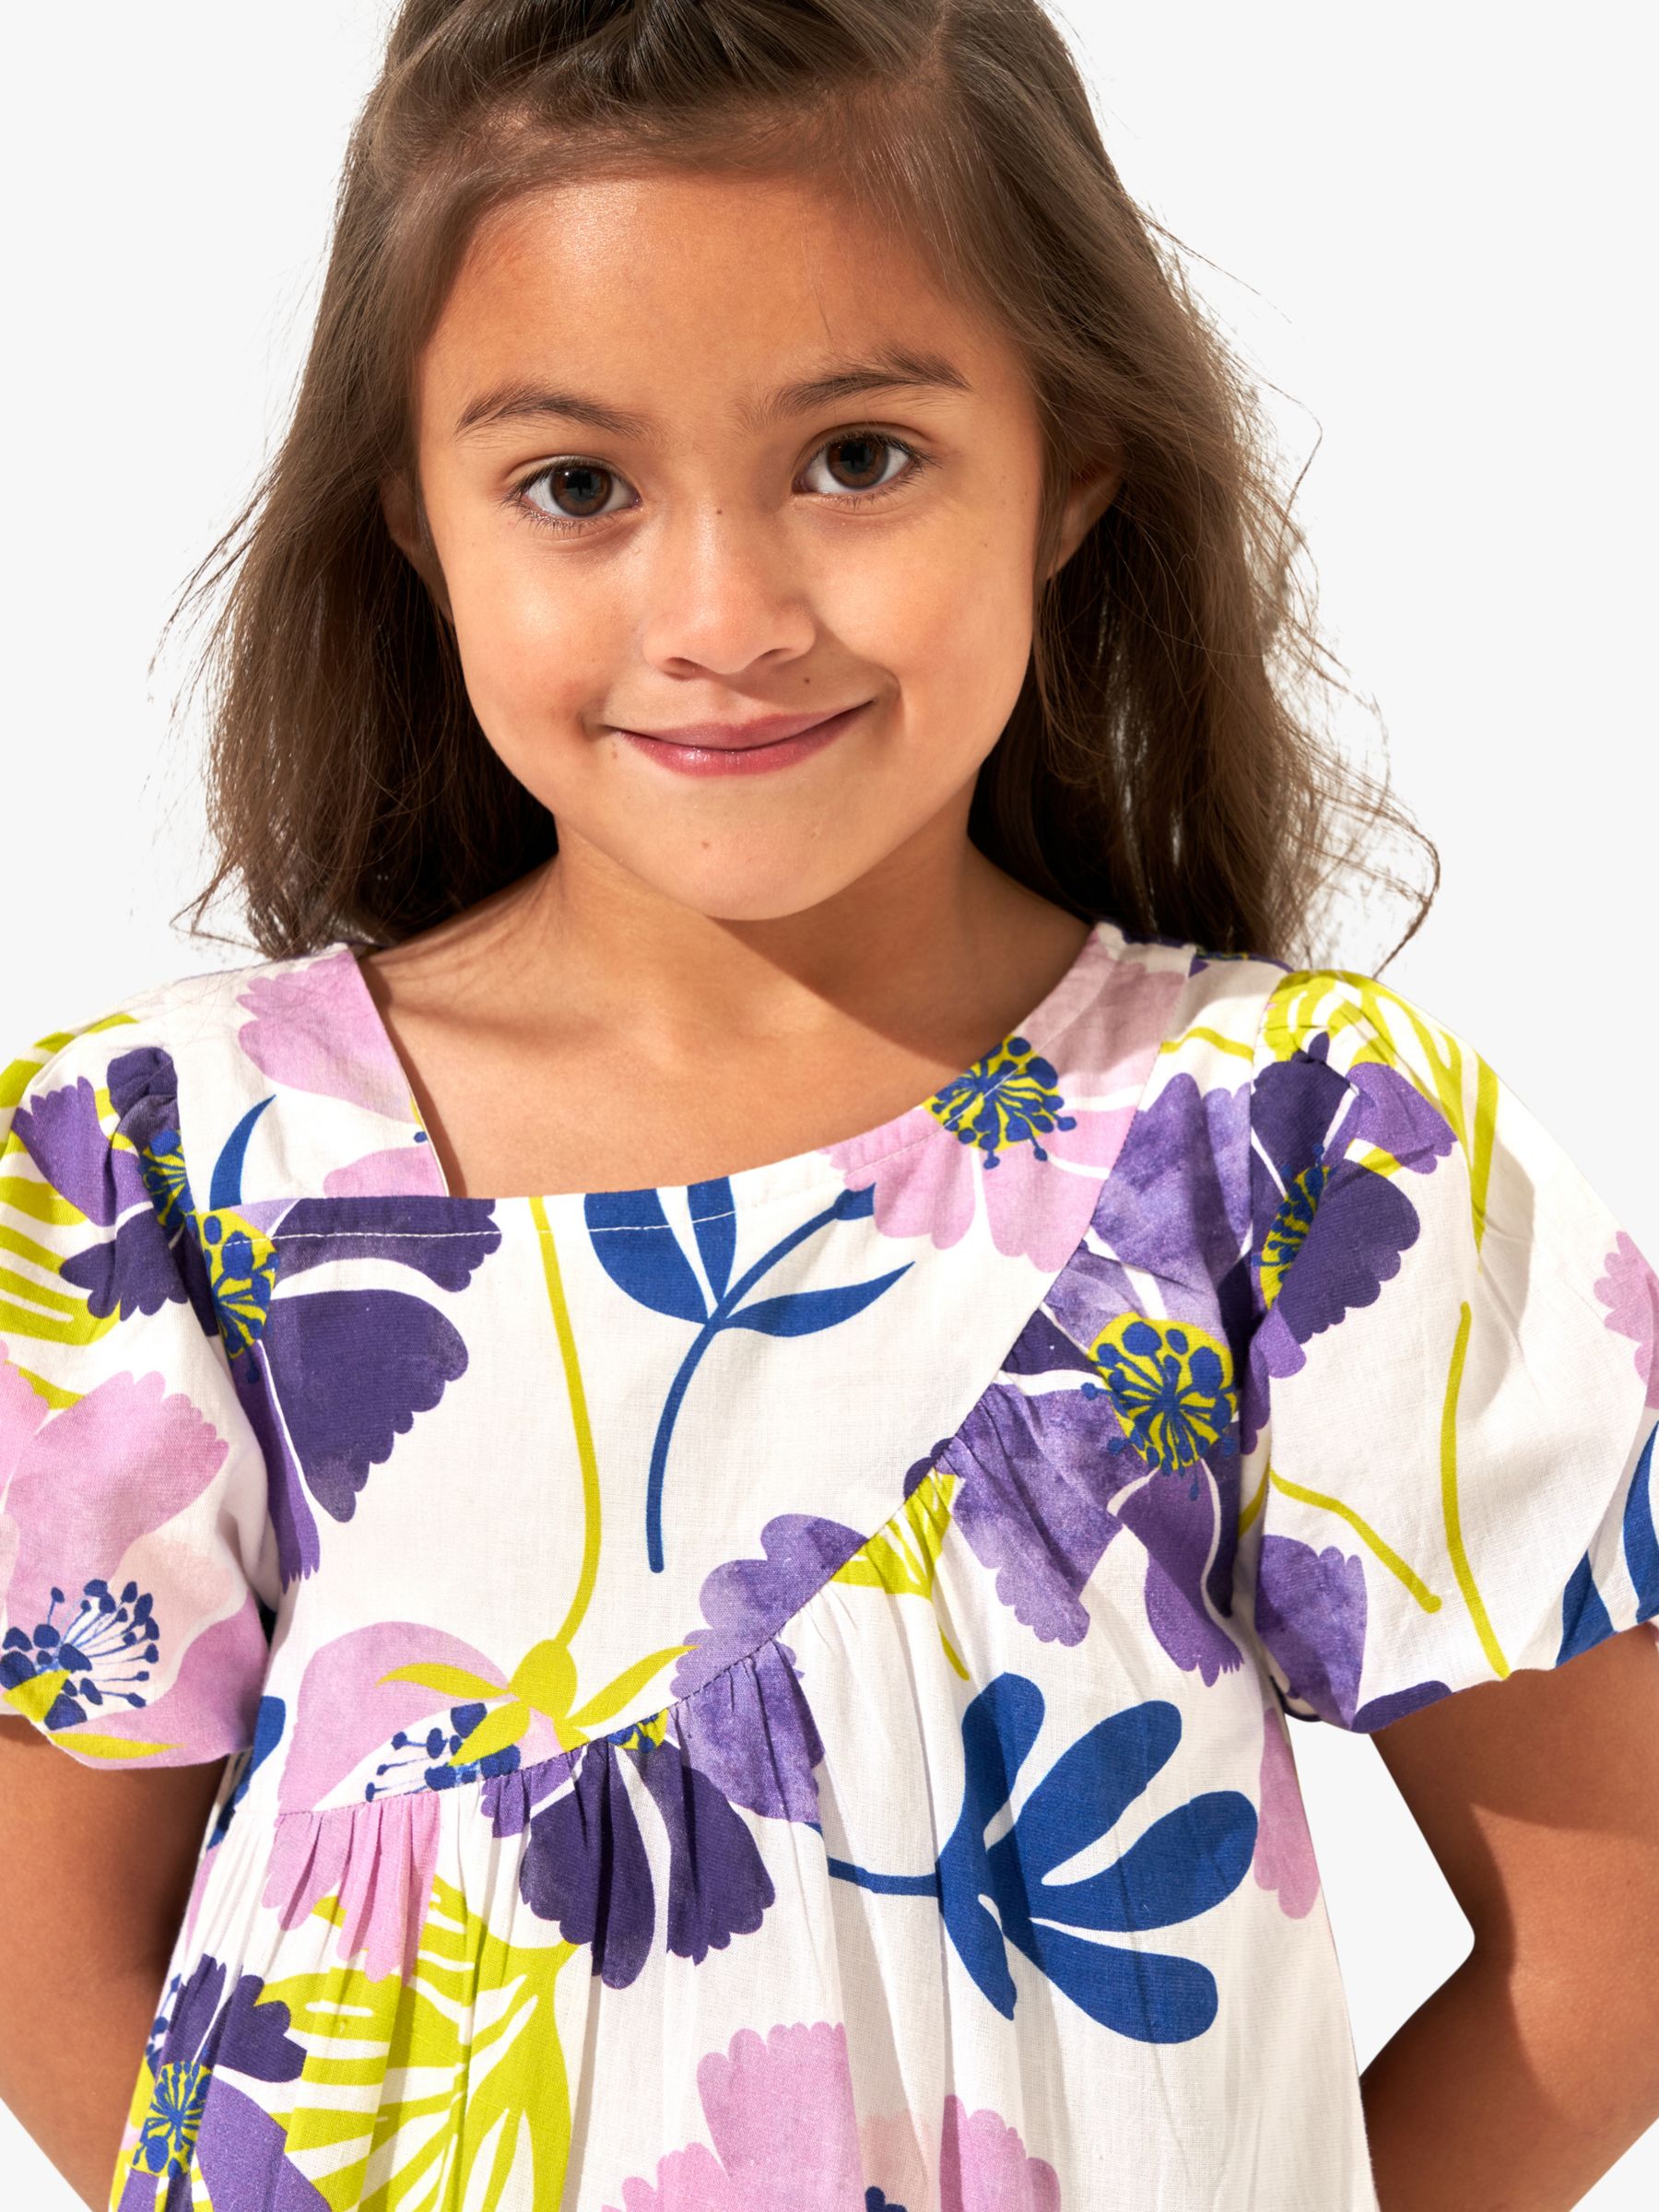 Buy Angel & Rocket Kids' Jodie Orchid Print Asymmetric Swing Dress, Multi Online at johnlewis.com